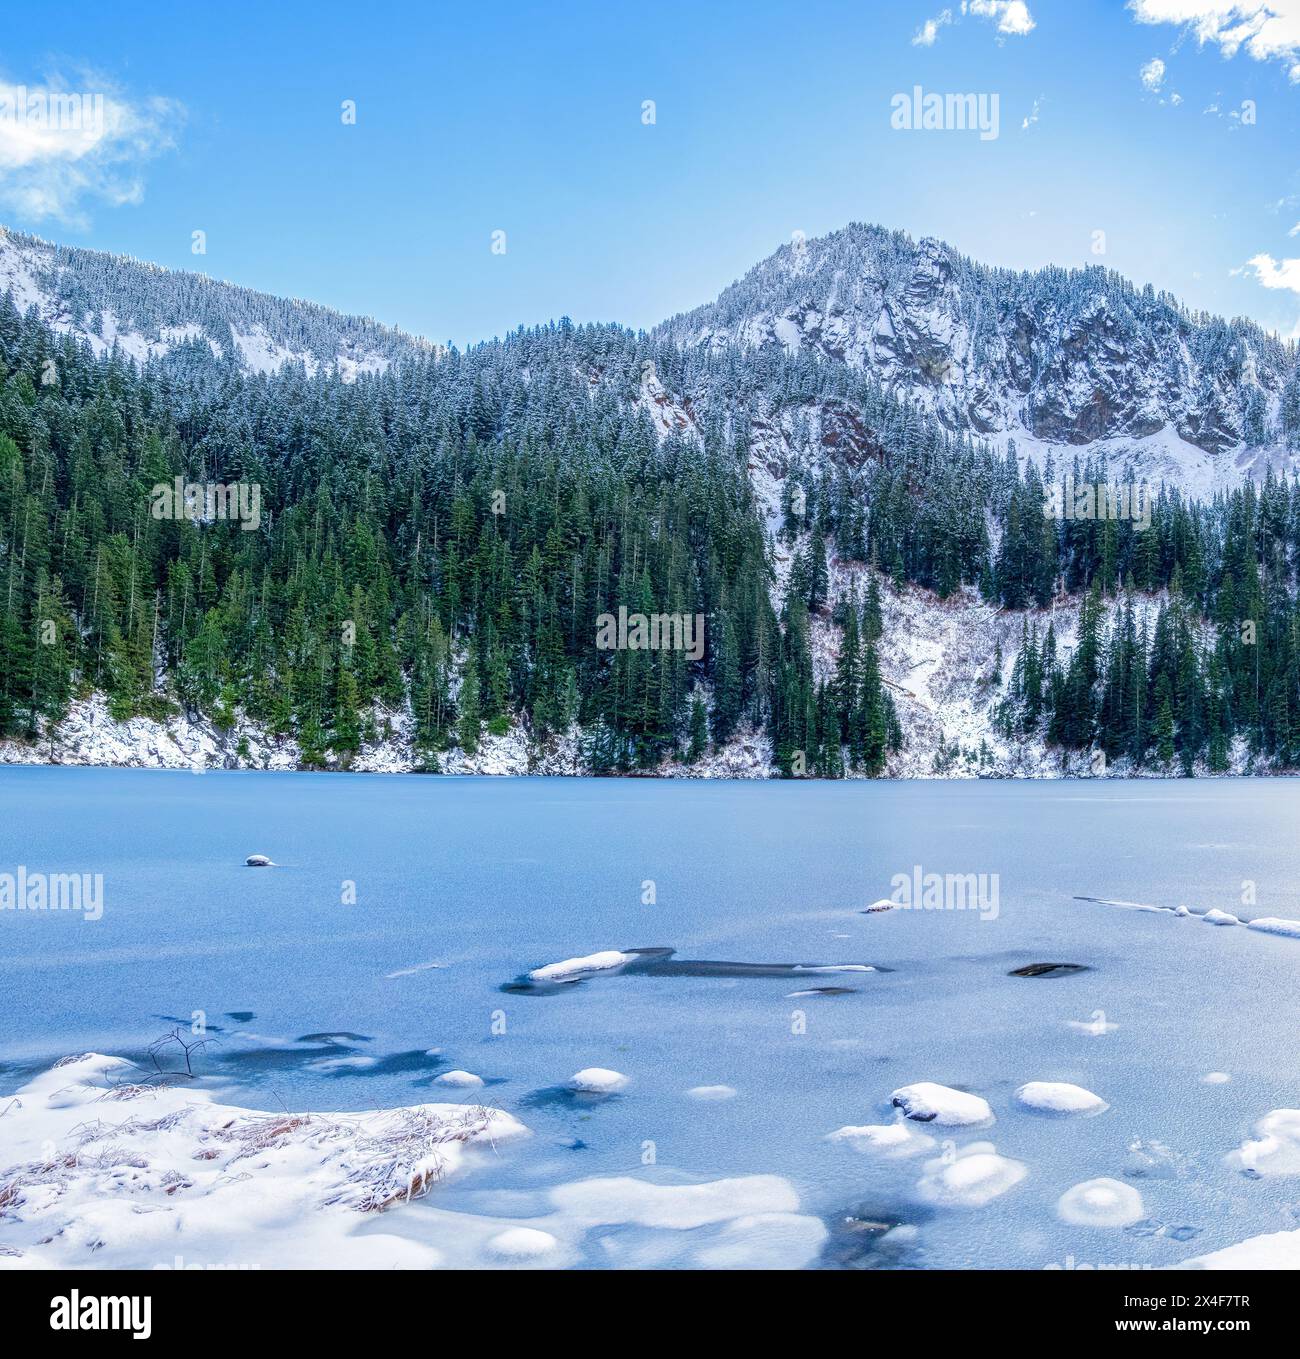 Stati Uniti, Stato di Washington. Cascate centrali, Mount Baker Snoqualmie National Forest. Lago di annette congelato con Abiel Peak sullo sfondo Foto Stock